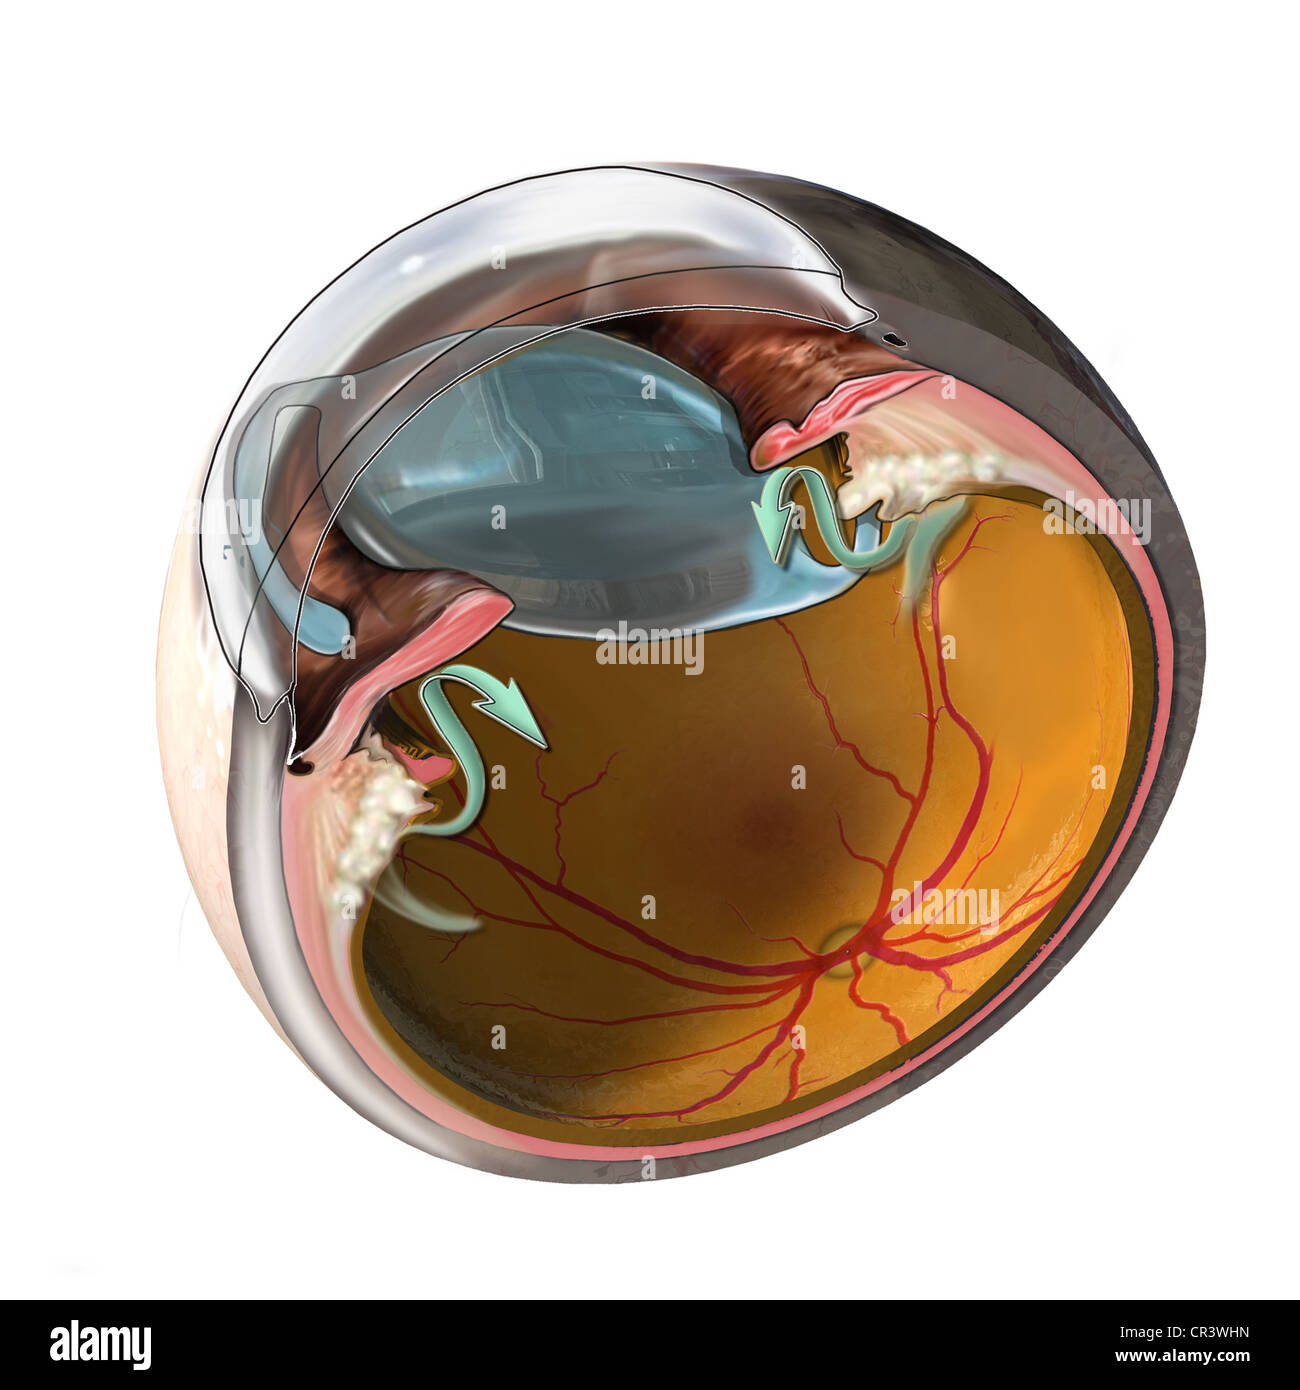 Cette exposition médicale dispose d'une section transversale de l'oeil avec une lentille intra-oculaire. Banque D'Images